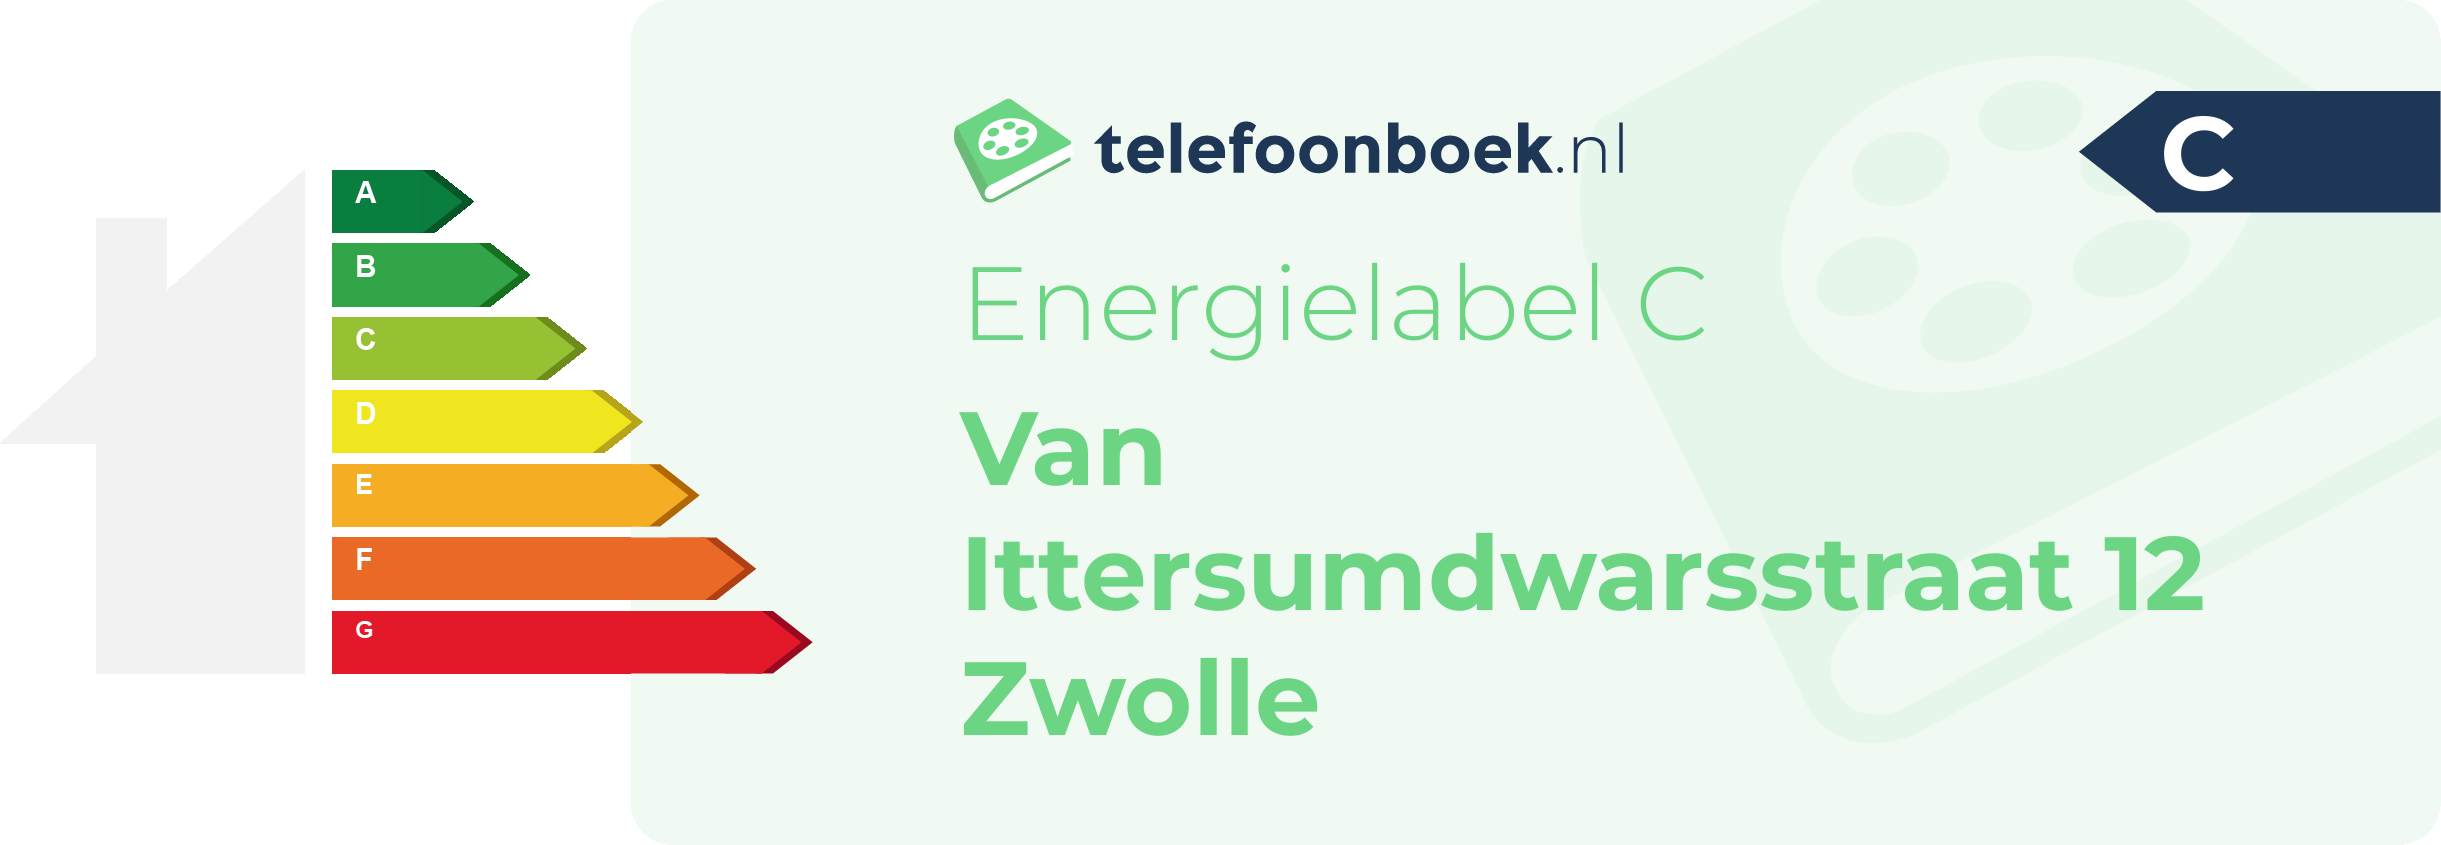 Energielabel Van Ittersumdwarsstraat 12 Zwolle